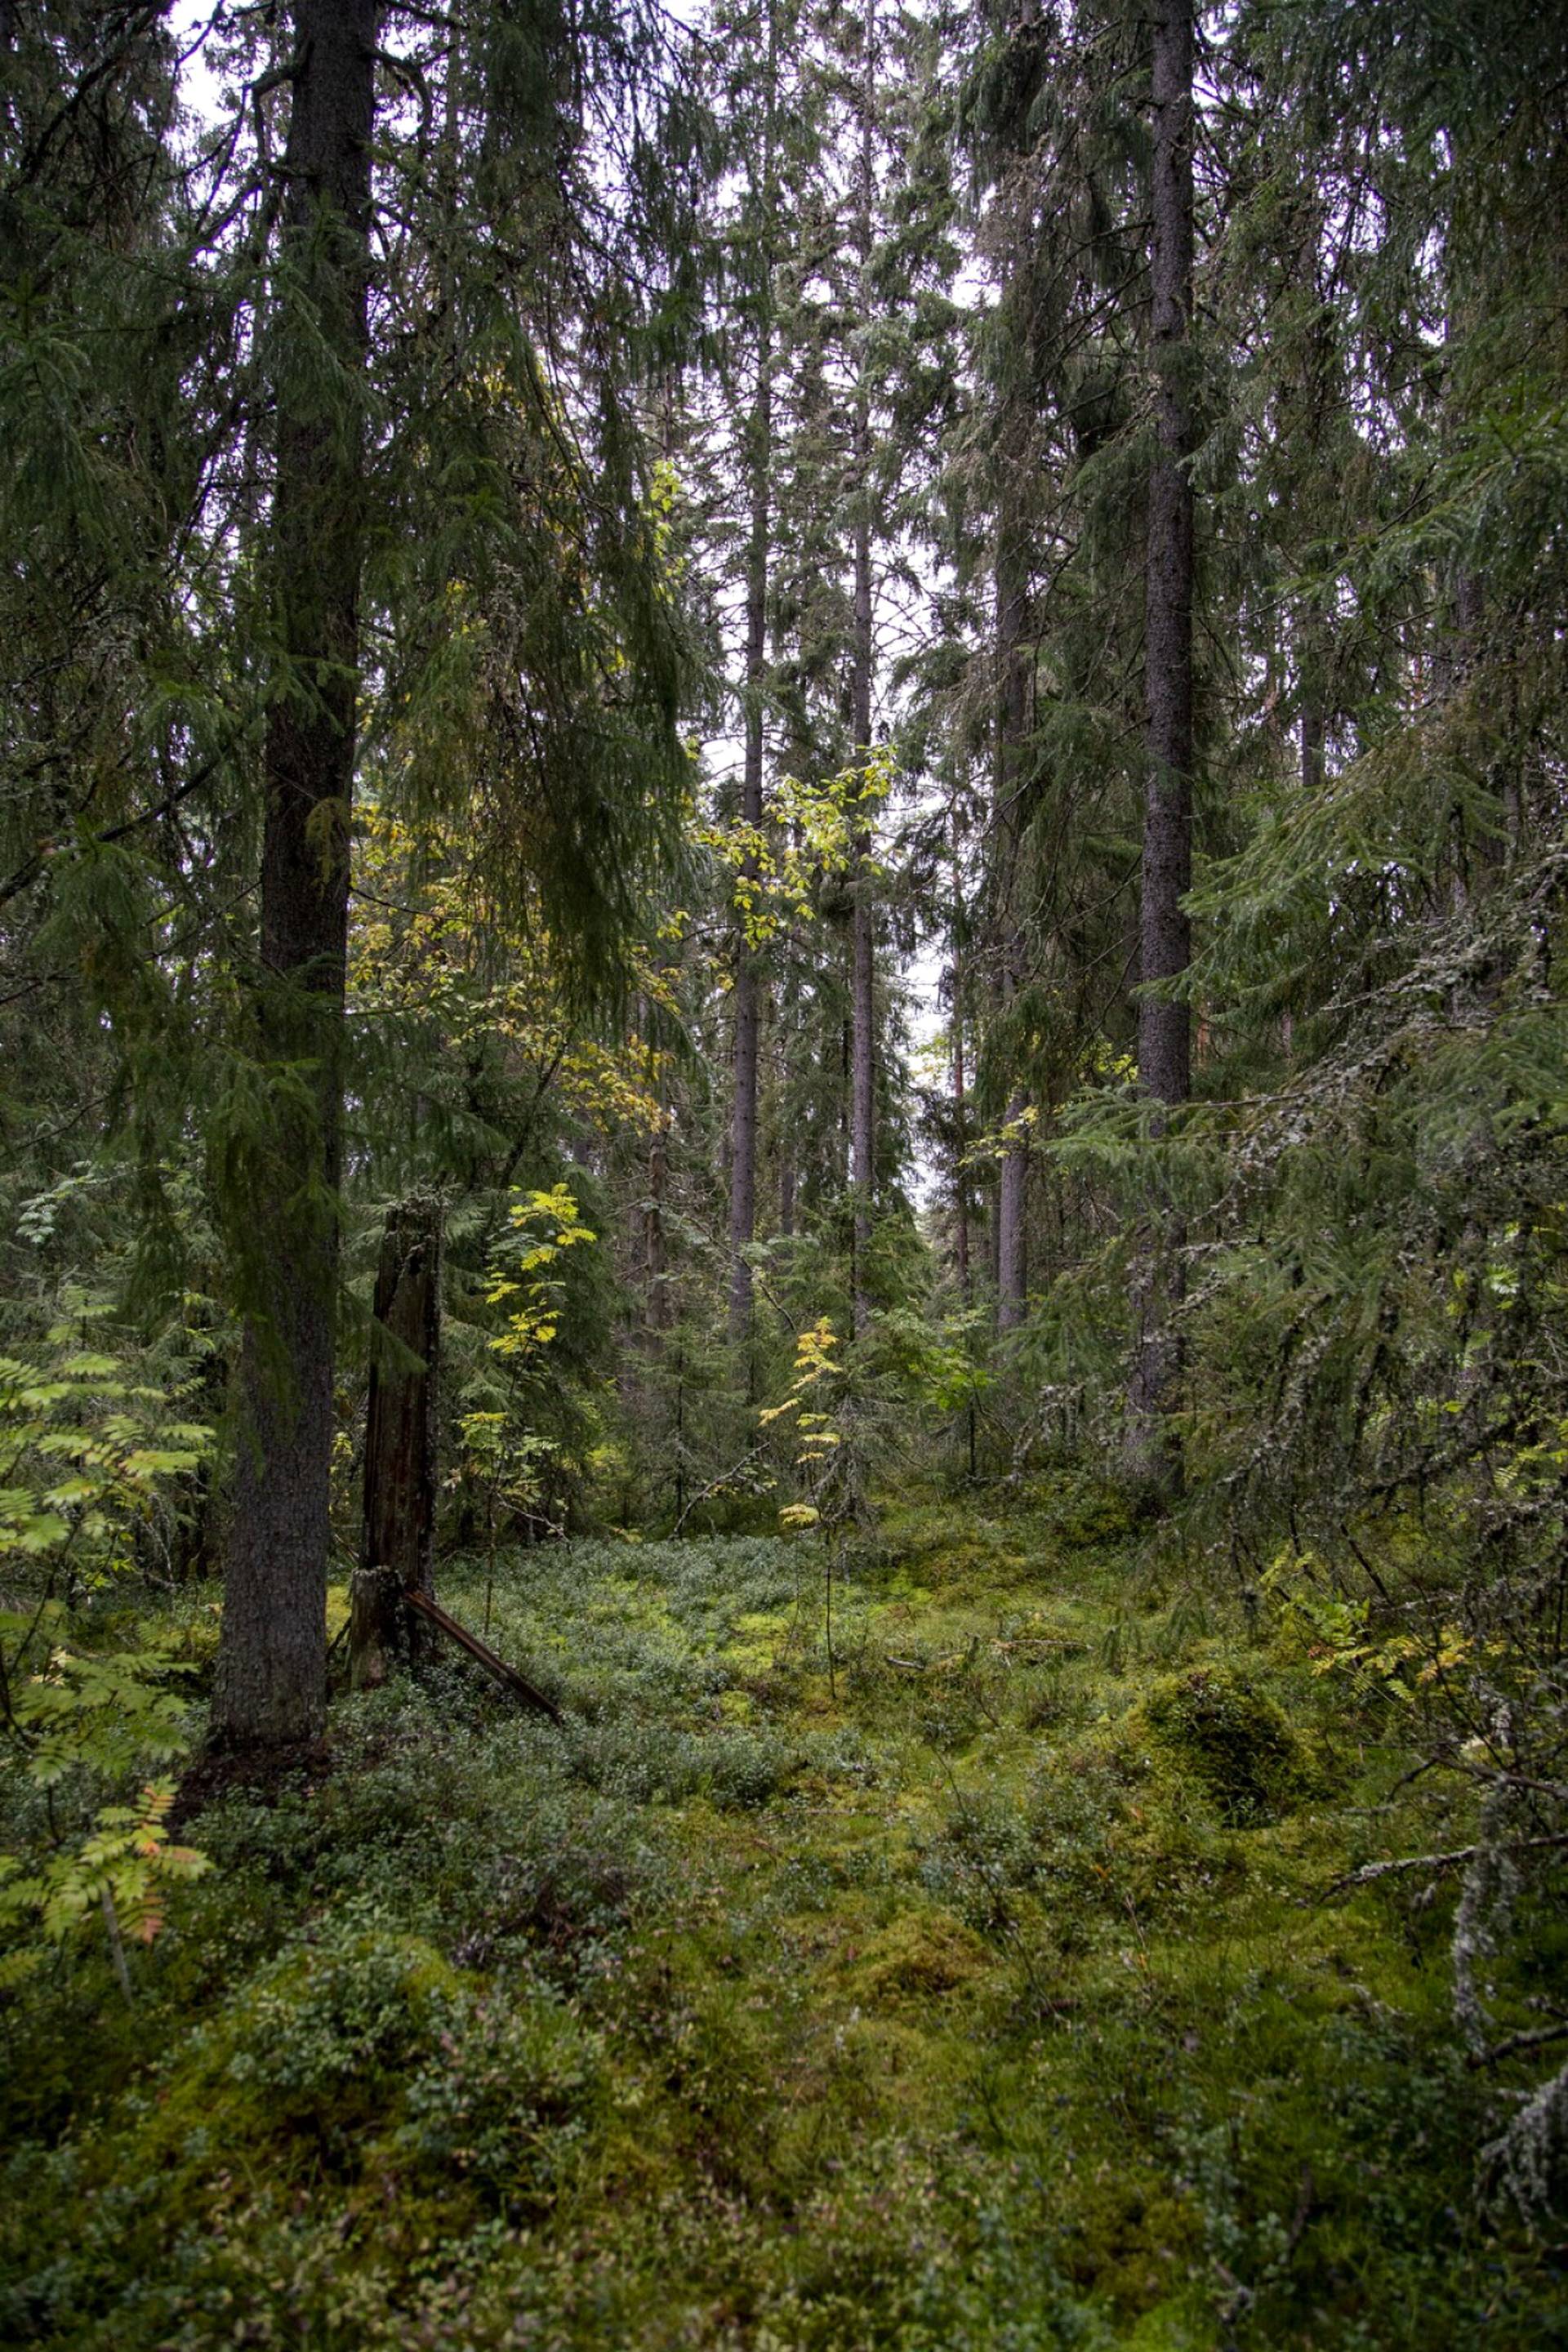 Suojelematonta luonnonmetsää Alaisenjärvellä Kurun pohjoispuolella. Metsä ei ole talouskäytössä. Metsiä, joissa ihmistoiminnan jälkiä ei näy ollenkaan, on Suomessa vain vähän. Monia vanhoja metsiä voidaan pitää luonnontilaisen kaltaisina, jos niitä ei ole käsitelty sotien jälkeisen ajan metsätalouden tyyliin. 